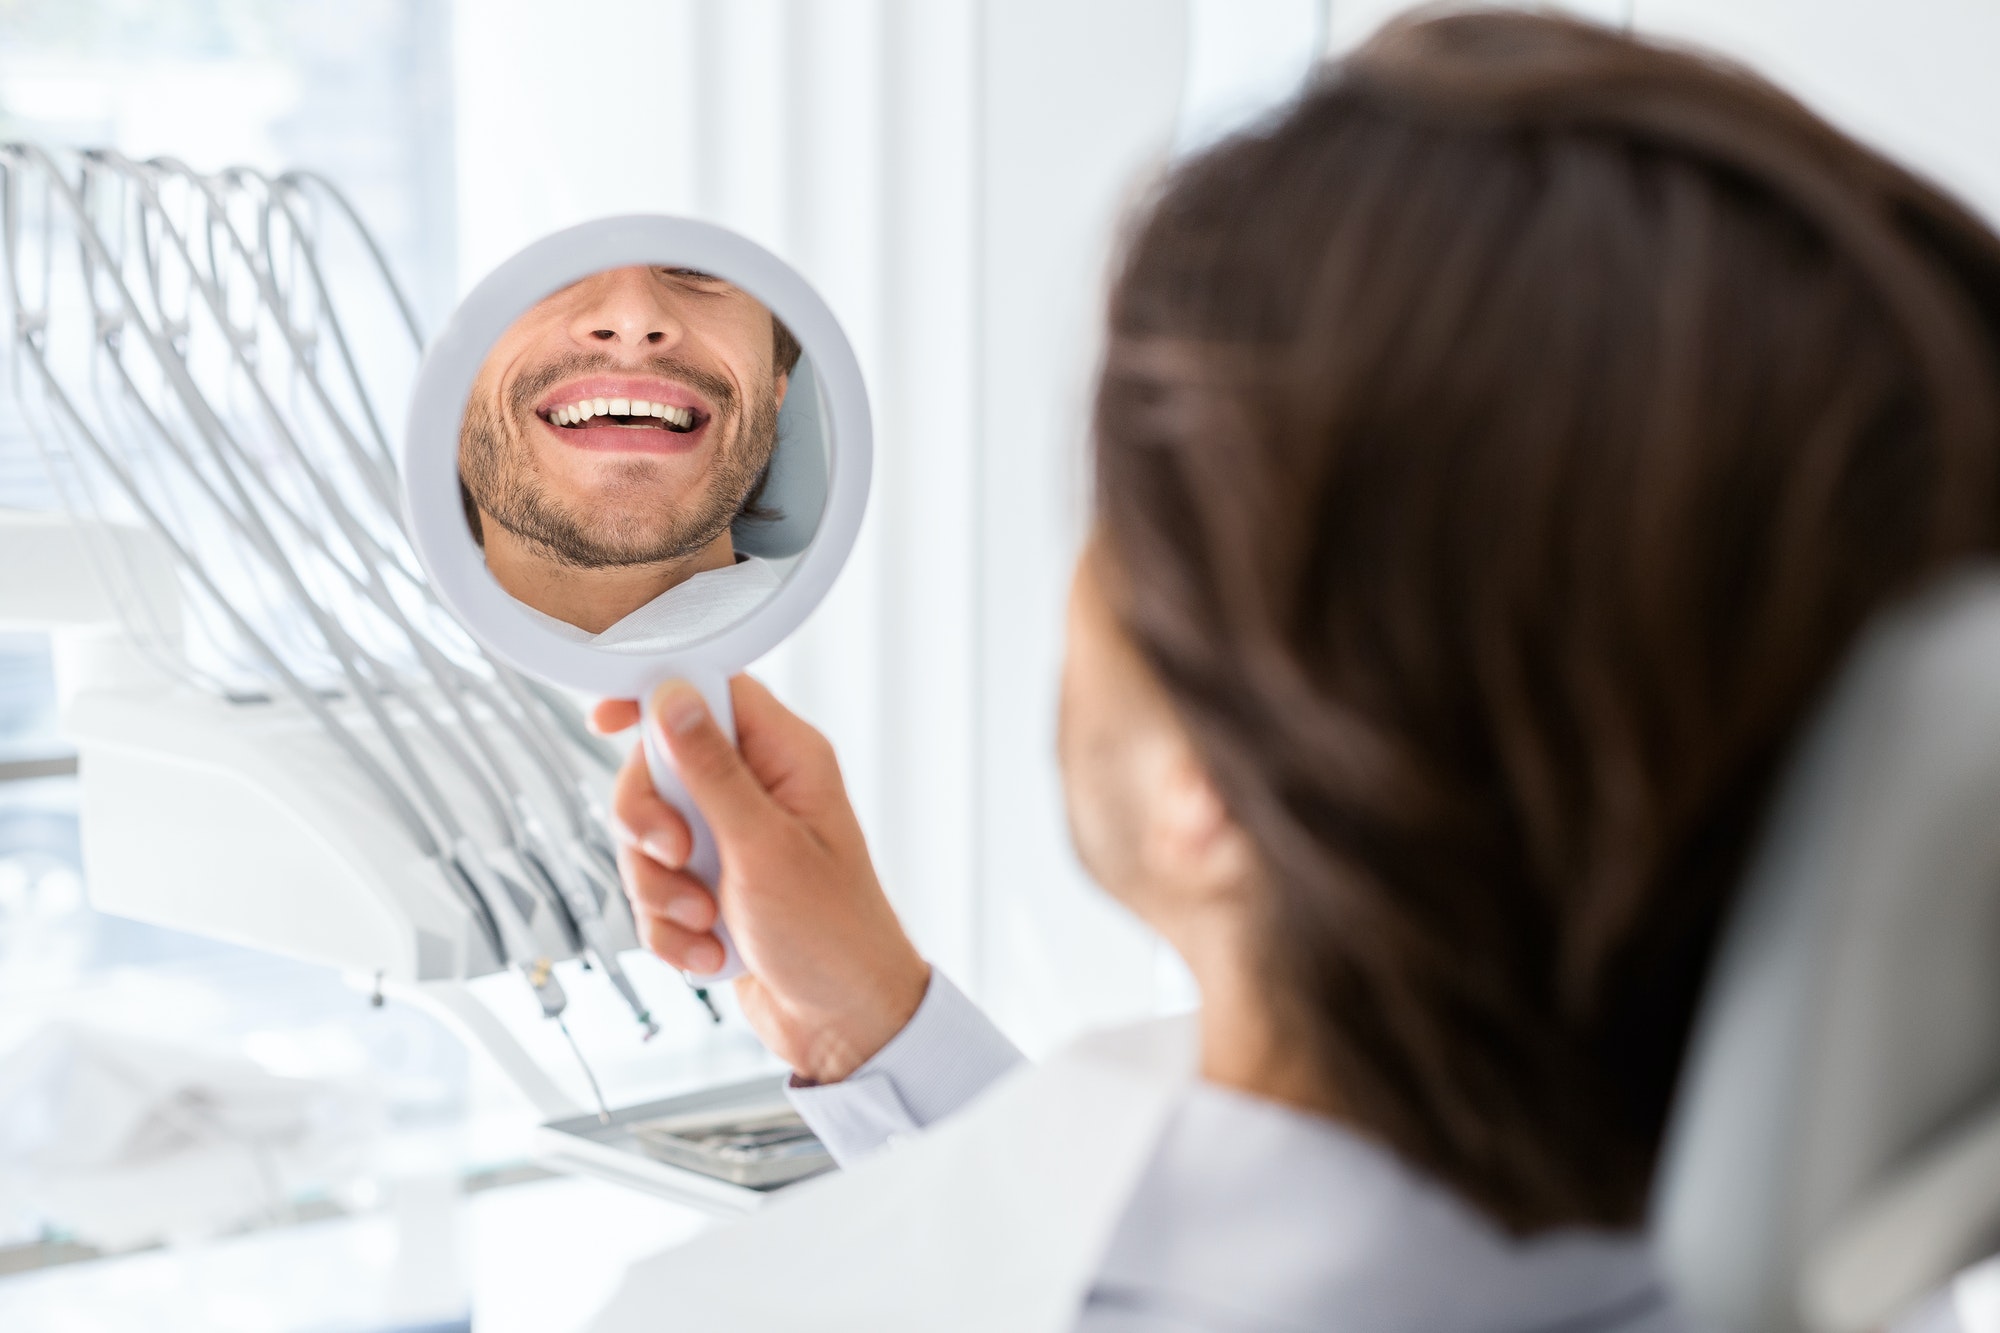 Nöjd patient tittar på sina tänder i spegel